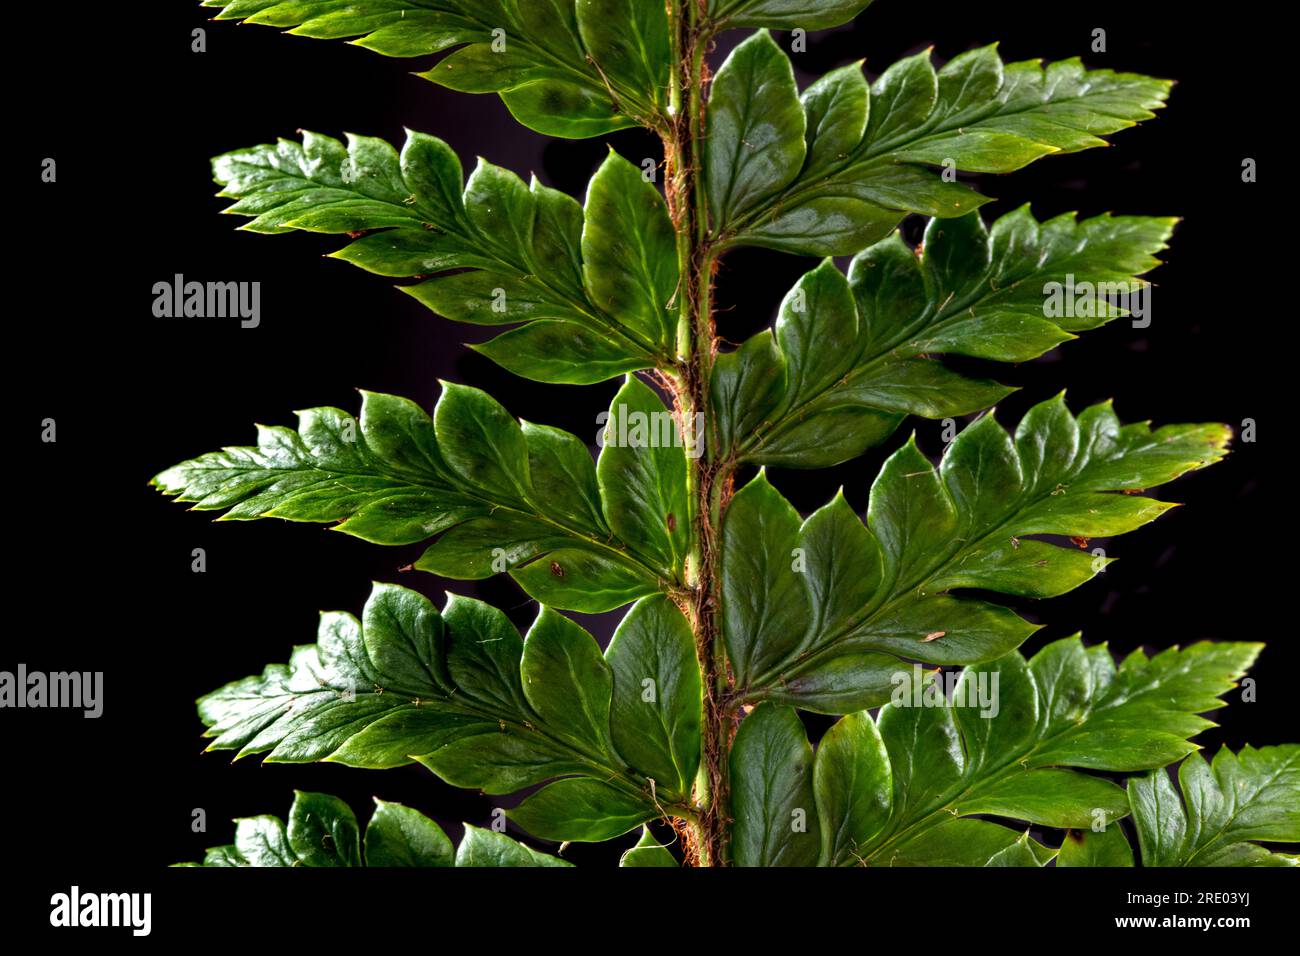 marsh fern, eastern marsh fern (Thelypteris palustris), upper side of leaf, leaflets against black background, Netherlands Stock Photo